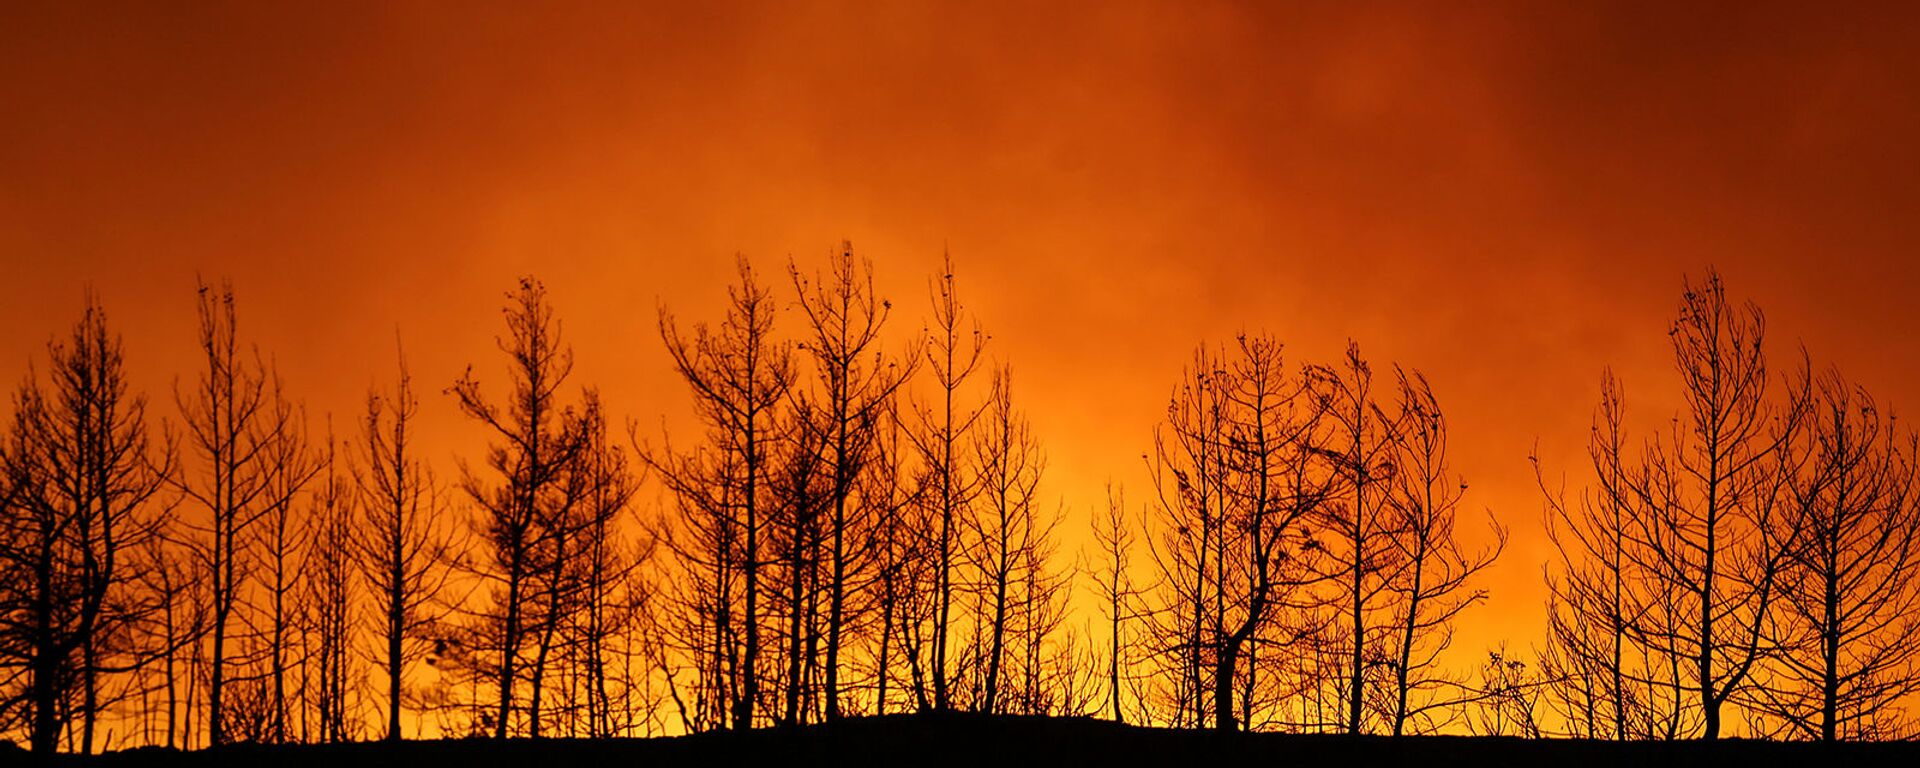 Лесной пожар близ города Манавгат, к востоку от курортного города Анталья (29 июля 2021). Турция - Sputnik Արմենիա, 1920, 29.07.2021